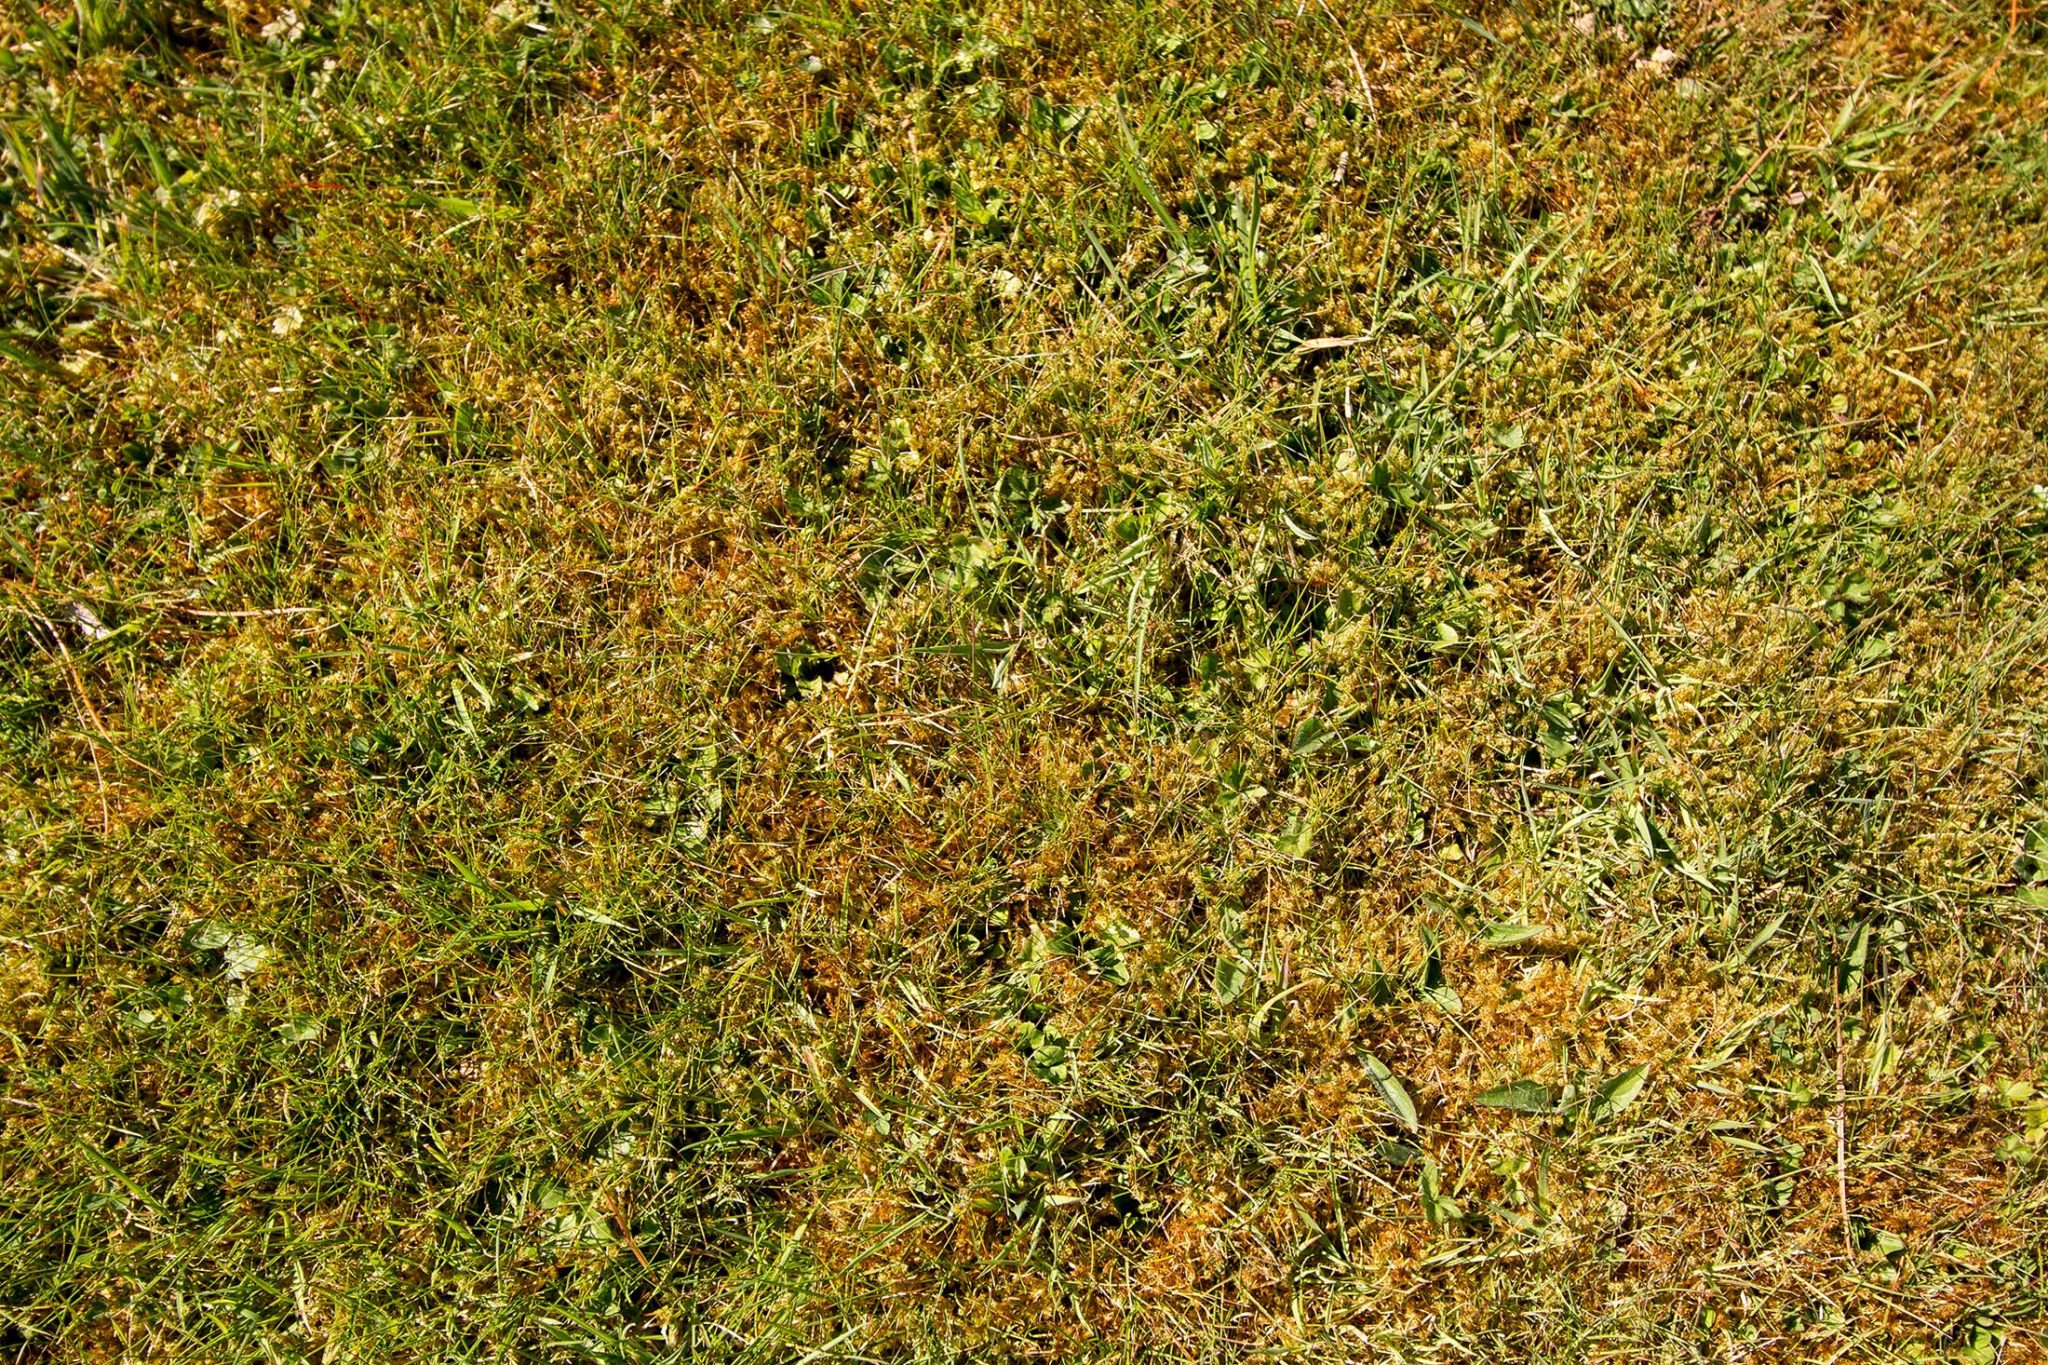 moss in lawn